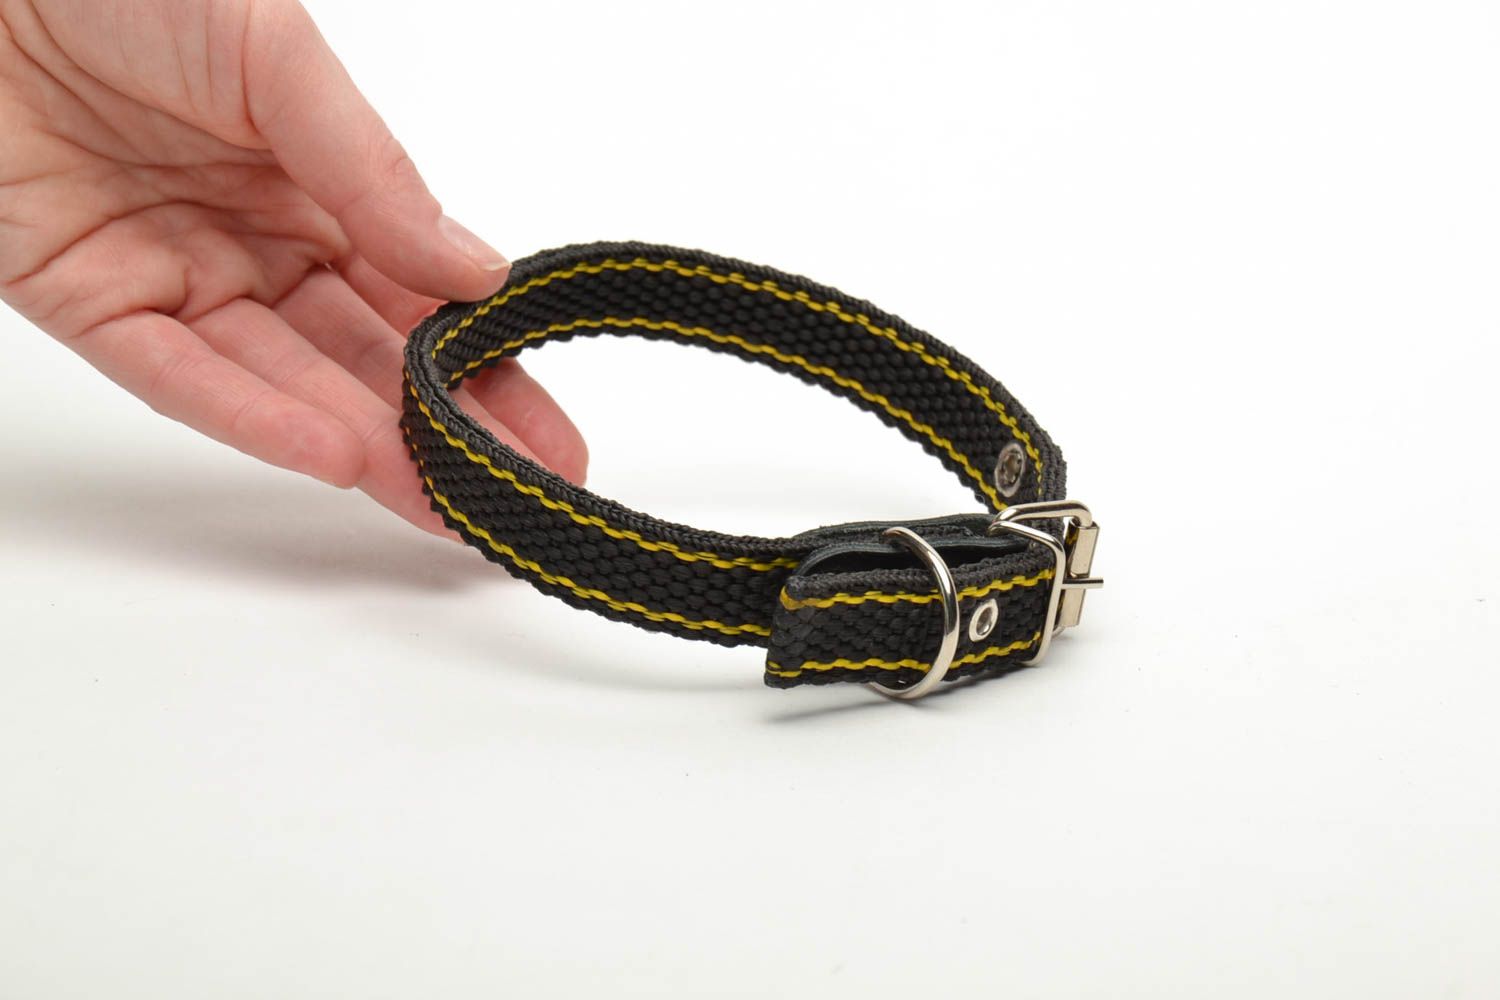 Textil Halsband für Hund in Schwarz foto 5